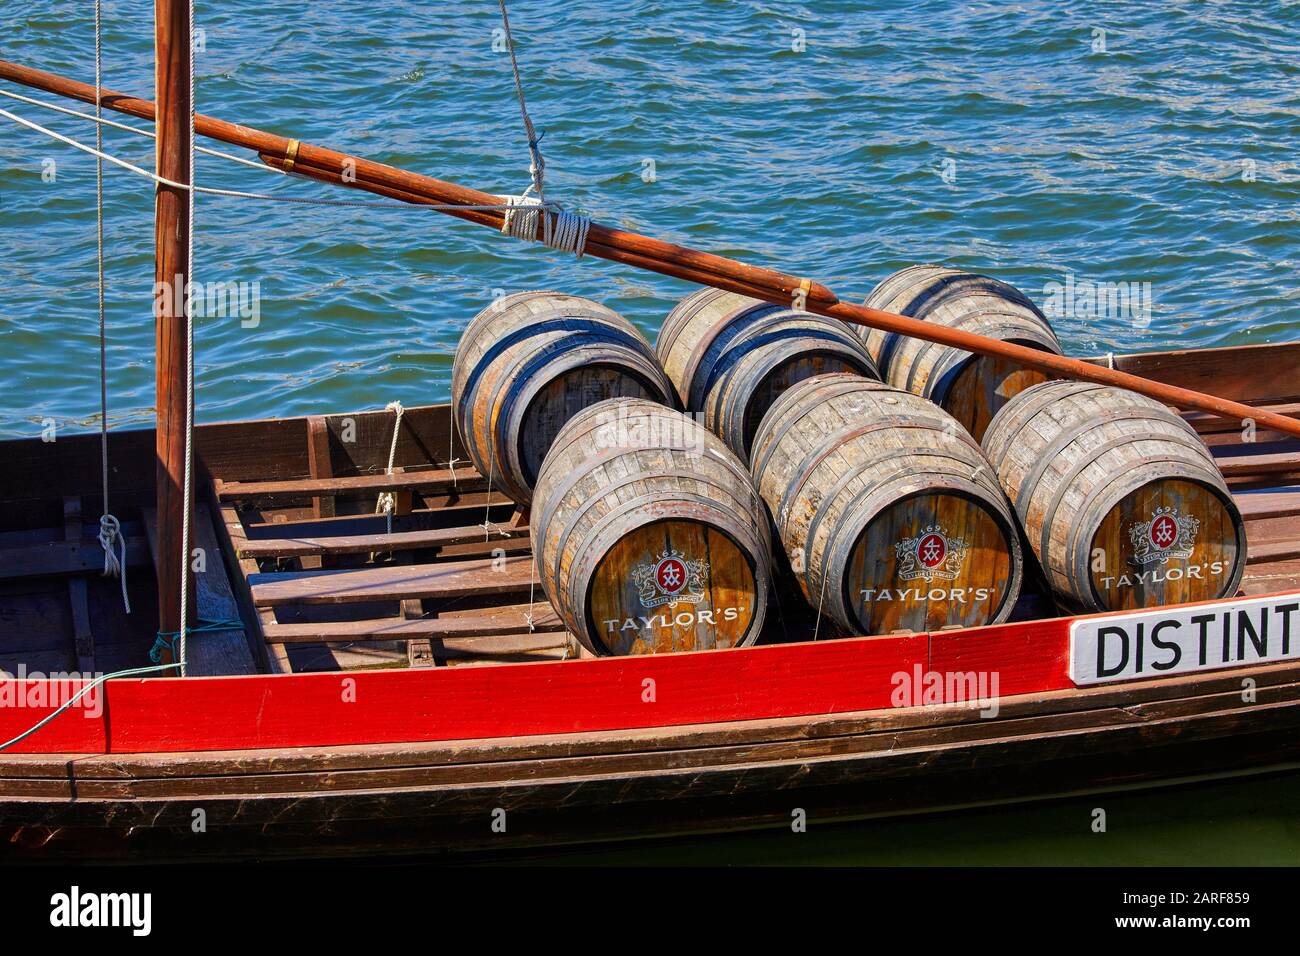 Traditional Portuguese wooden cargo boats transporting port wine, Rio Douro river, Vila Nova de Gaia, Porto, Portugal Stock Photo